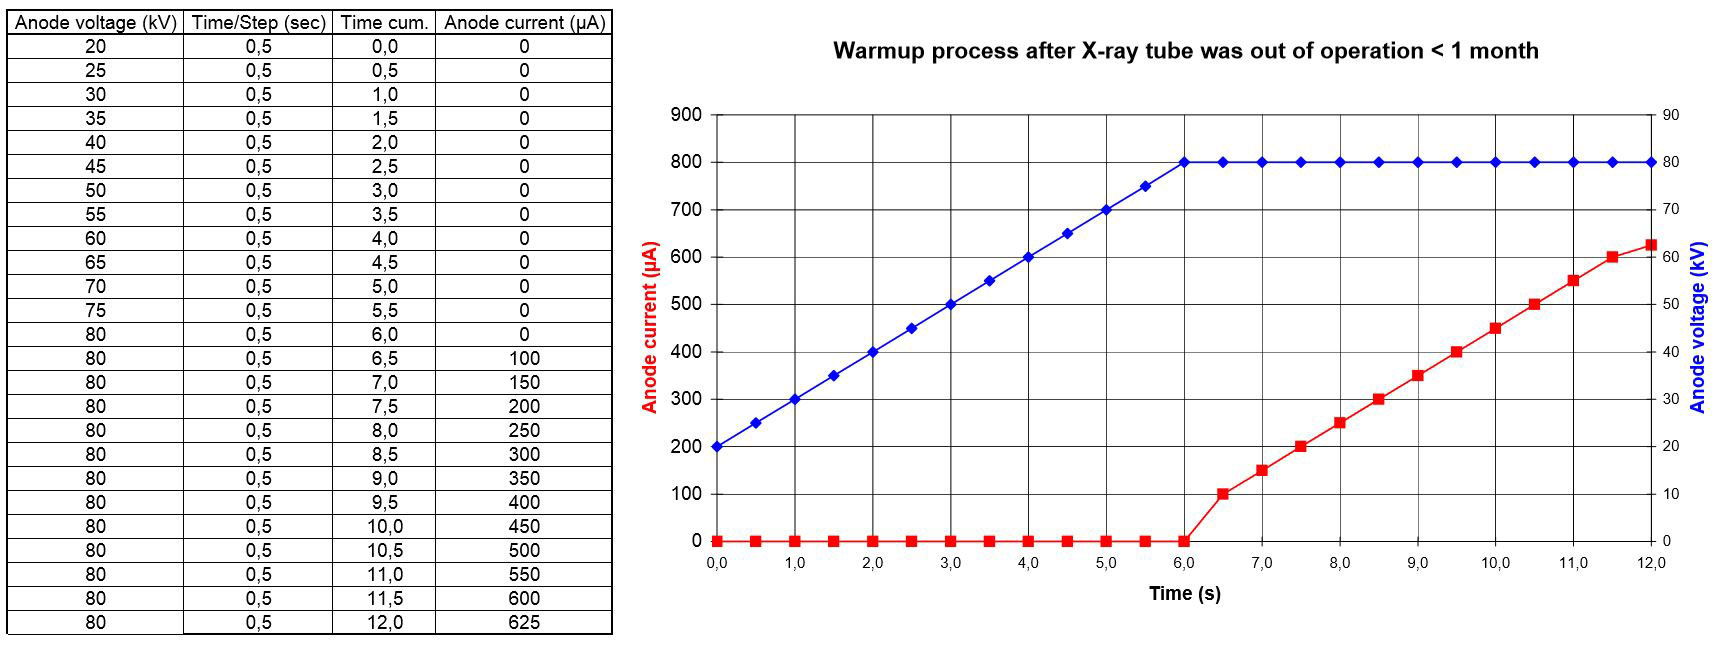 WarmUp Prozesse für 80kV Röntgenquellen außer Betrieb < 1 Monat